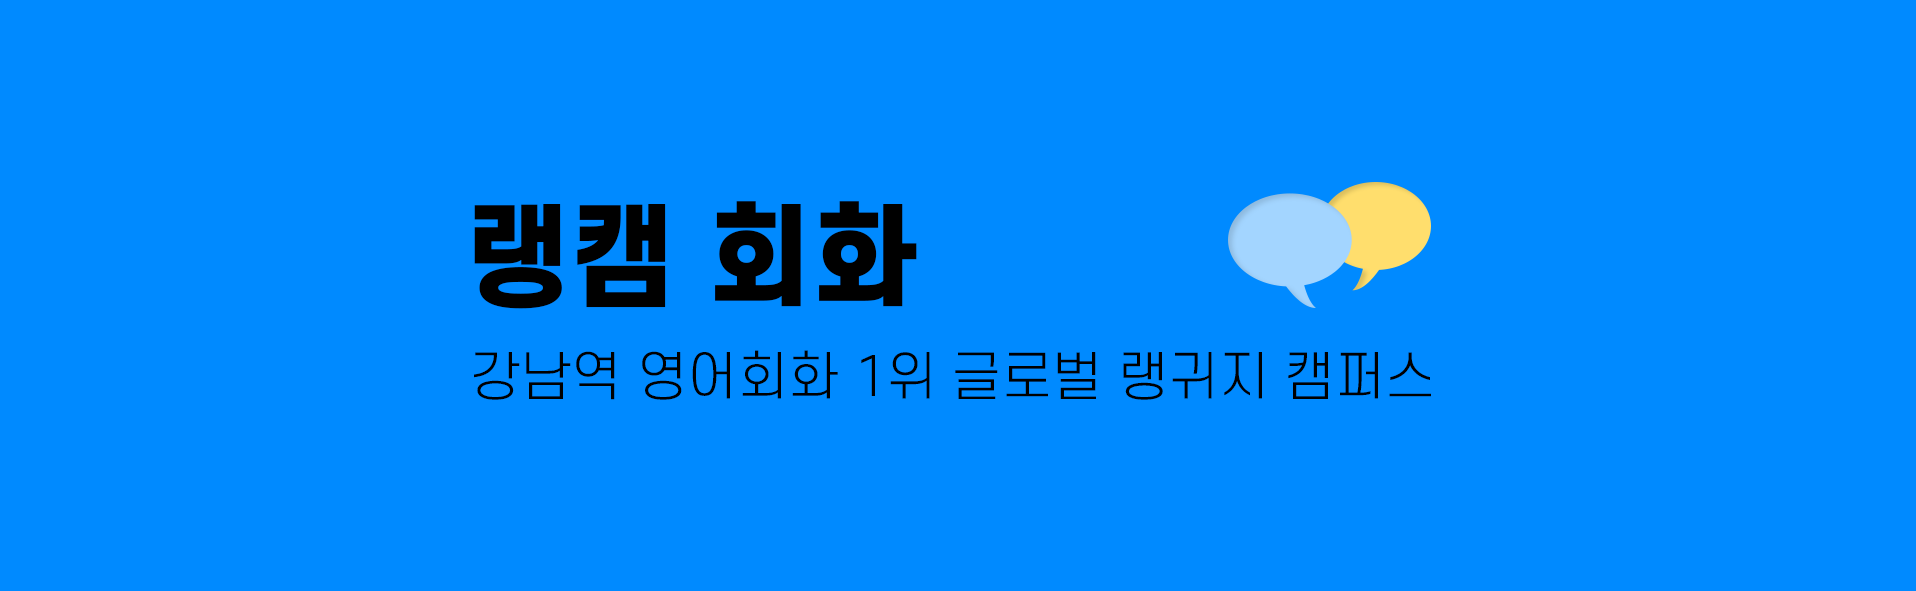 강남역 영어회화 1위 글로벌 랭귀지 캠퍼스 랭캠회화